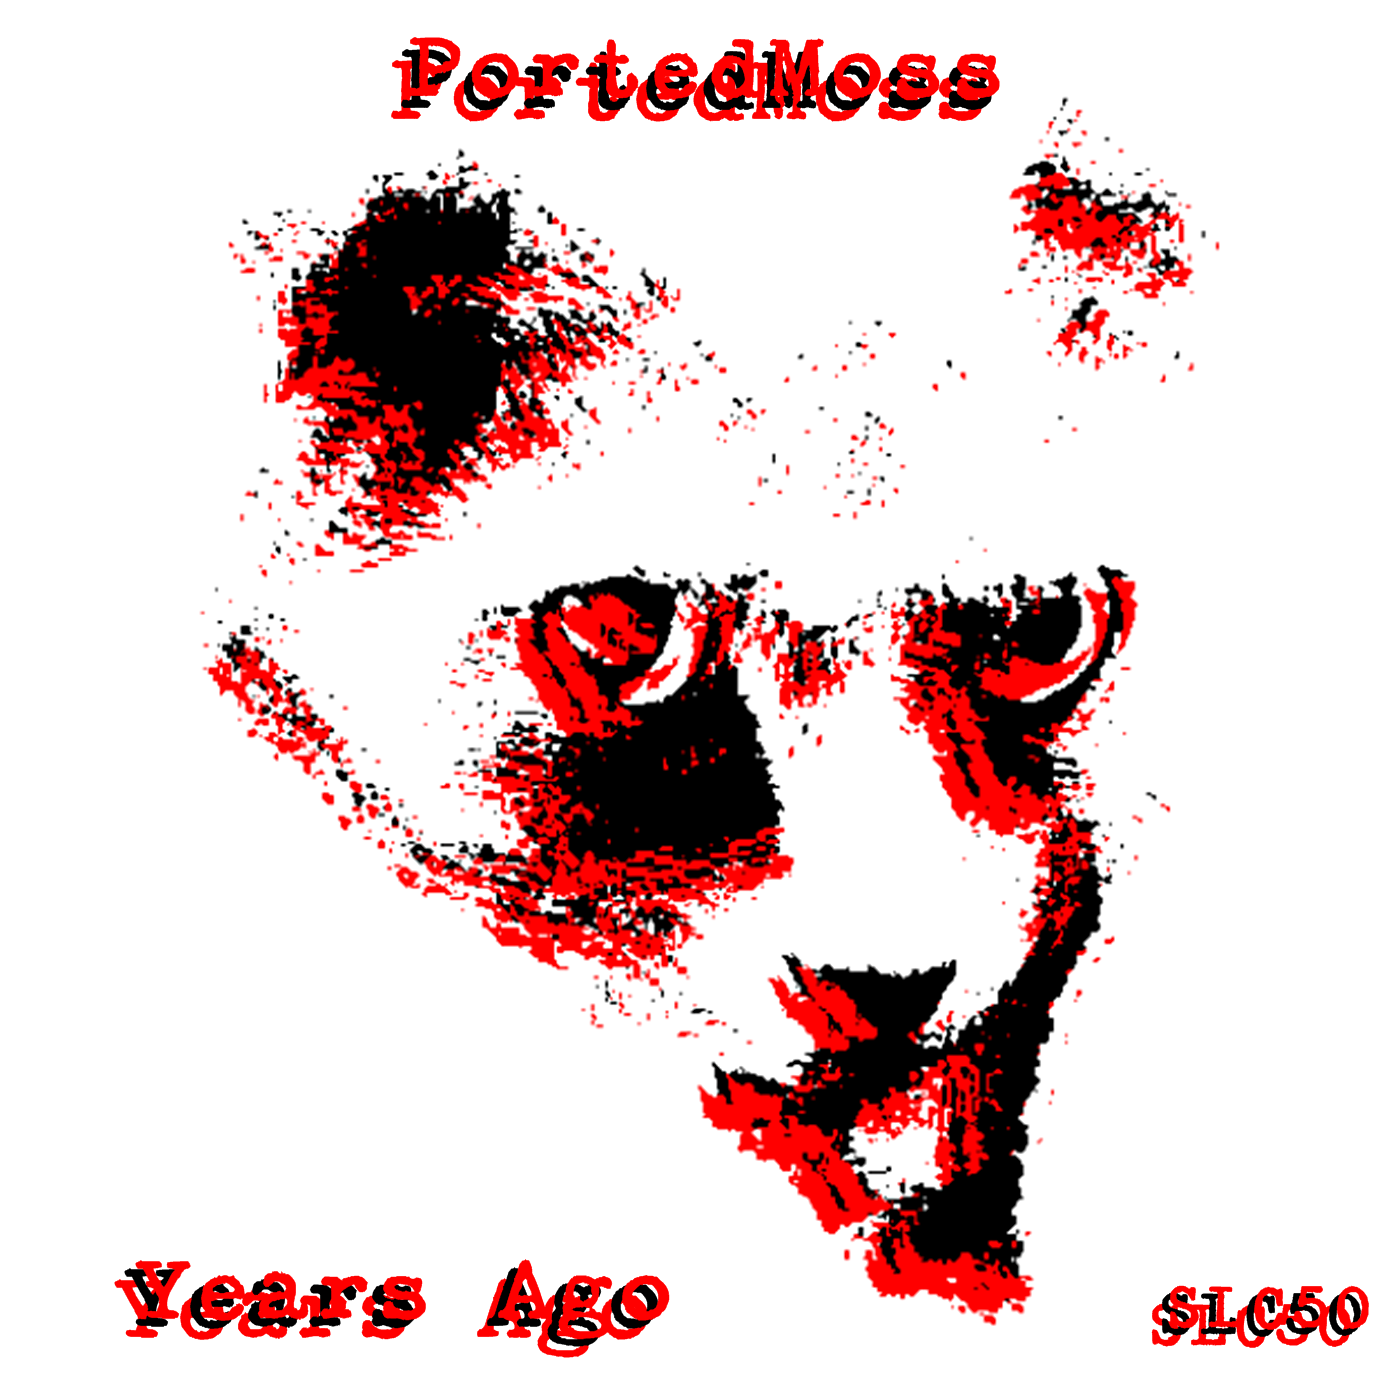 PortedMoss – Years Ago